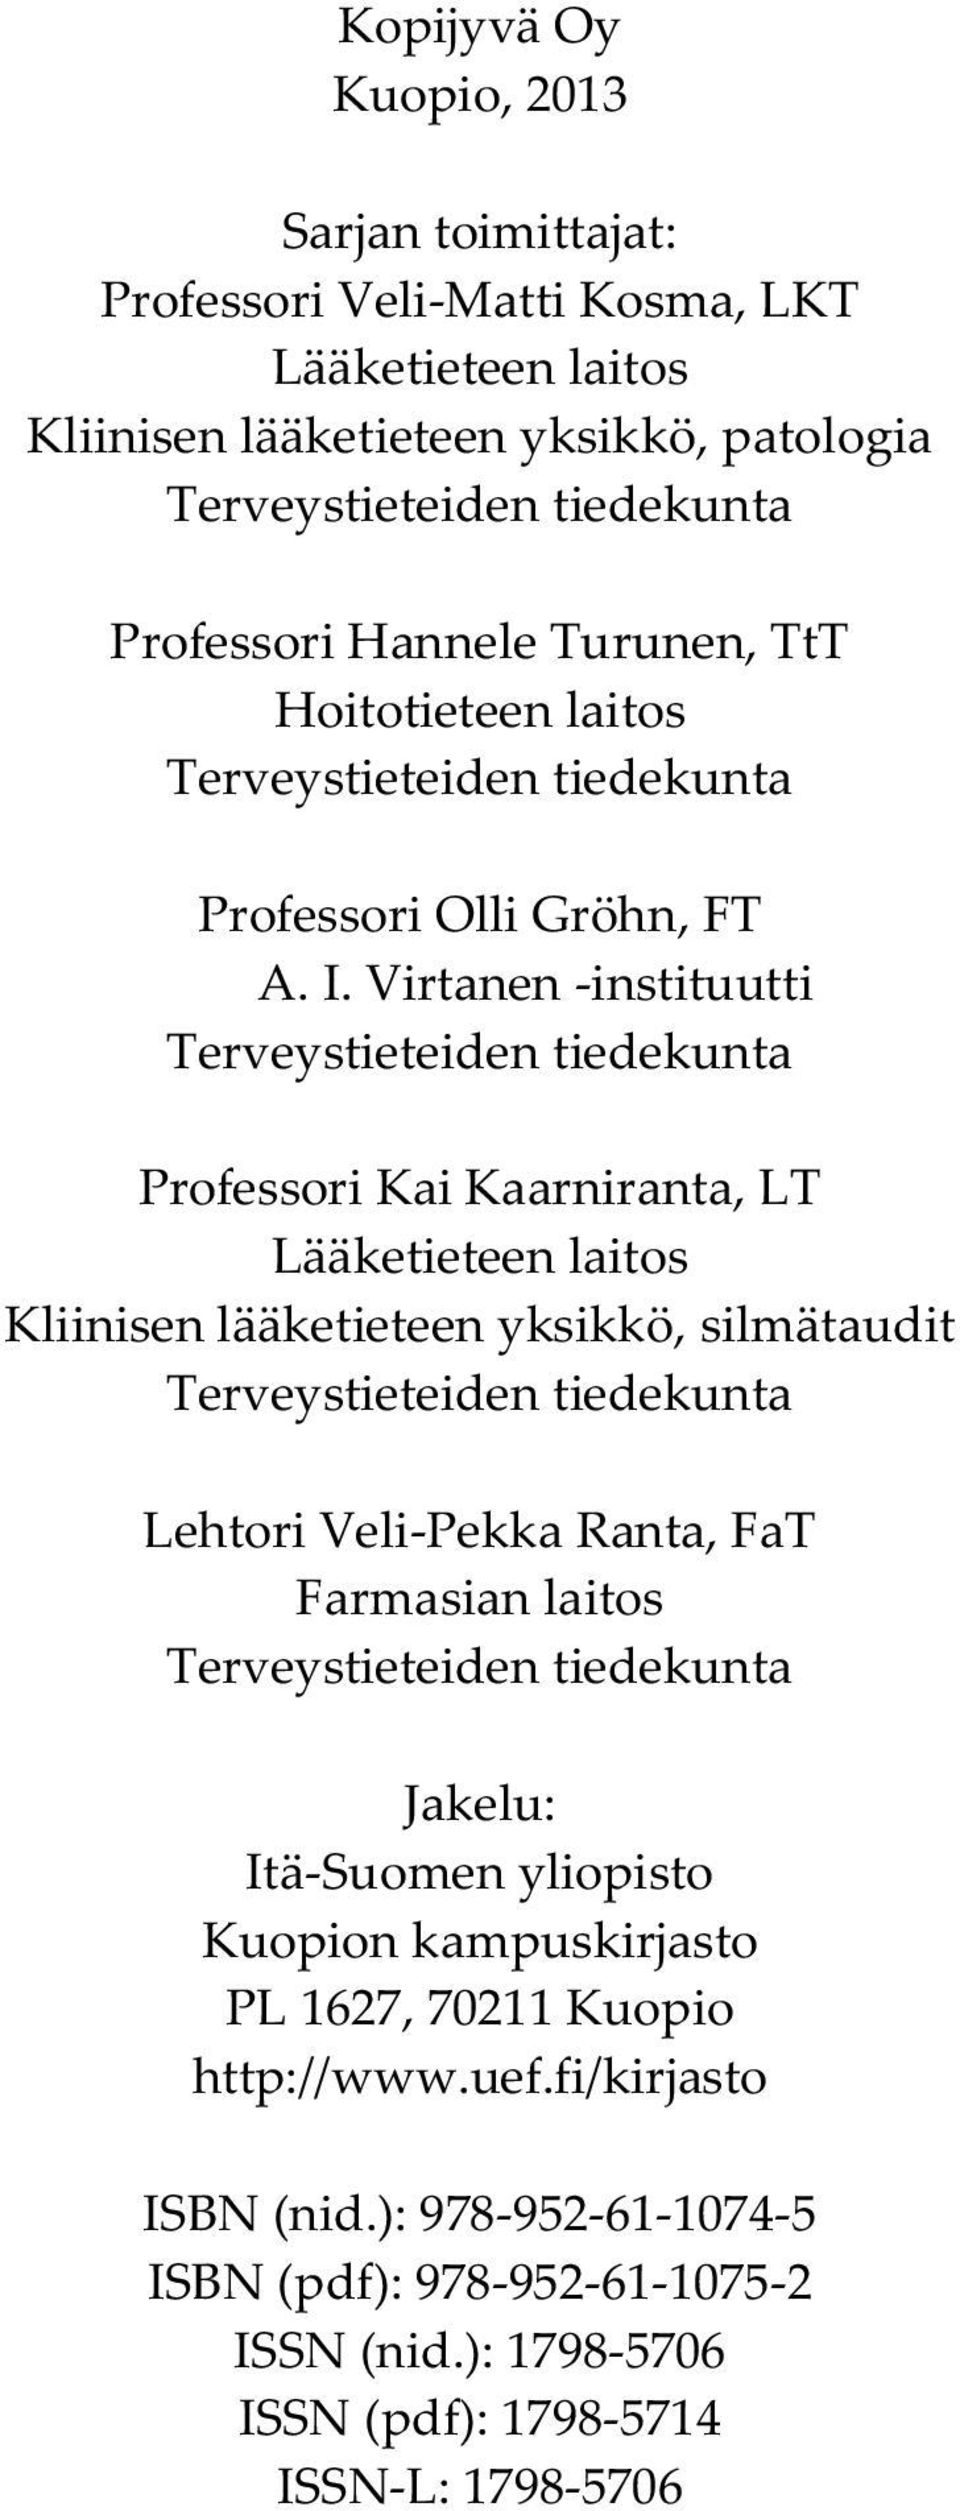 Virtanen -instituutti Terveystieteiden tiedekunta Professori Kai Kaarniranta, LT Lääketieteen laitos Kliinisen lääketieteen yksikkö, silmätaudit Terveystieteiden tiedekunta Lehtori